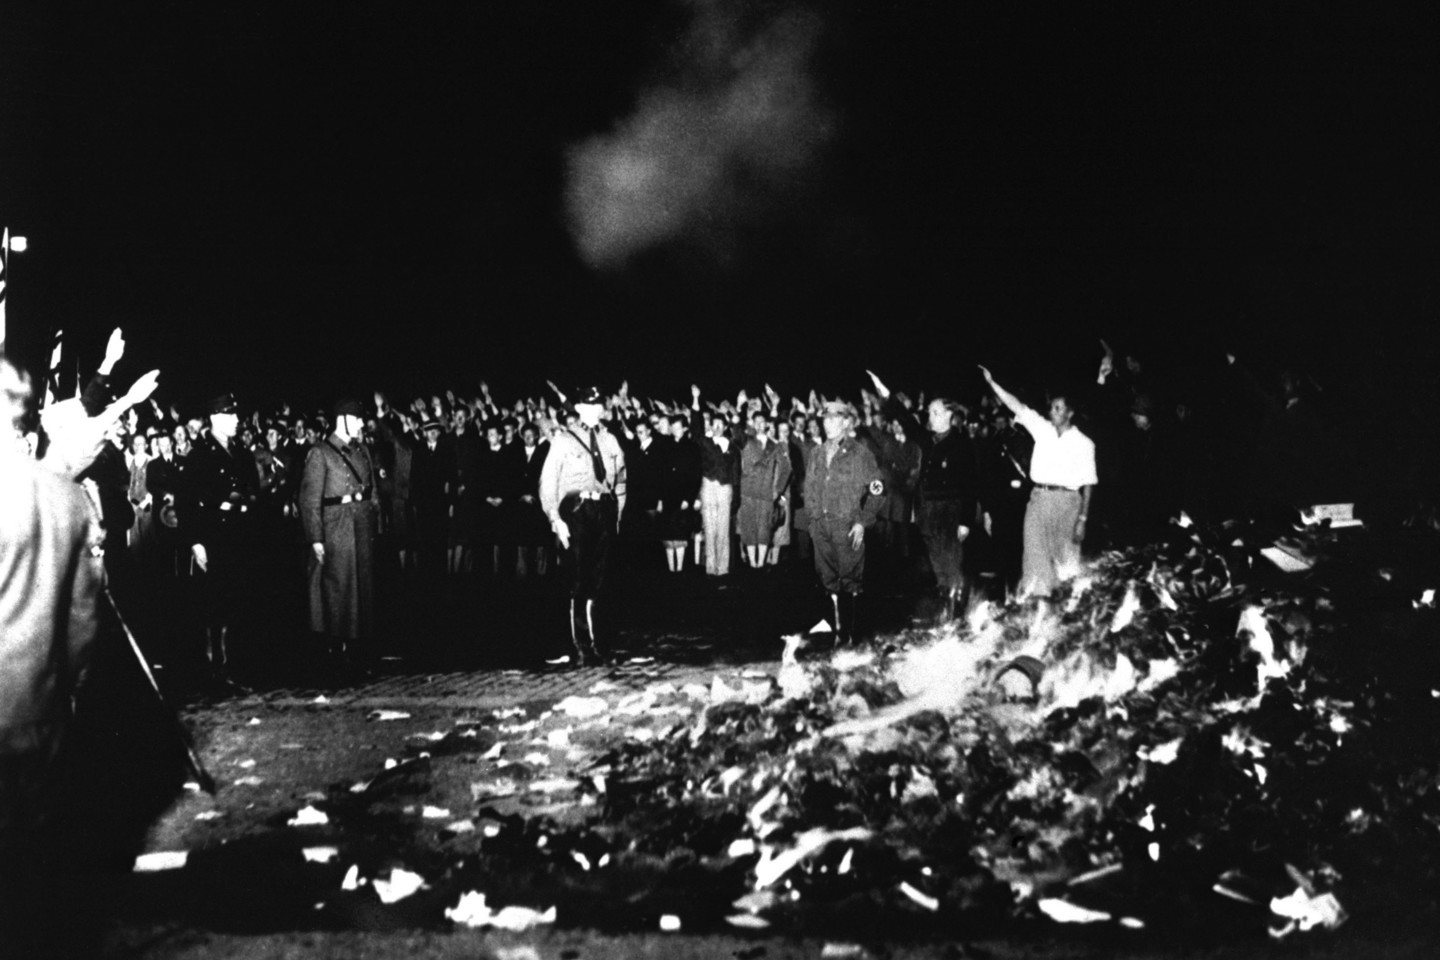  1933 metais naciai sudegino tūkstančius knygų.<br> "ViDA Press" nuotr.